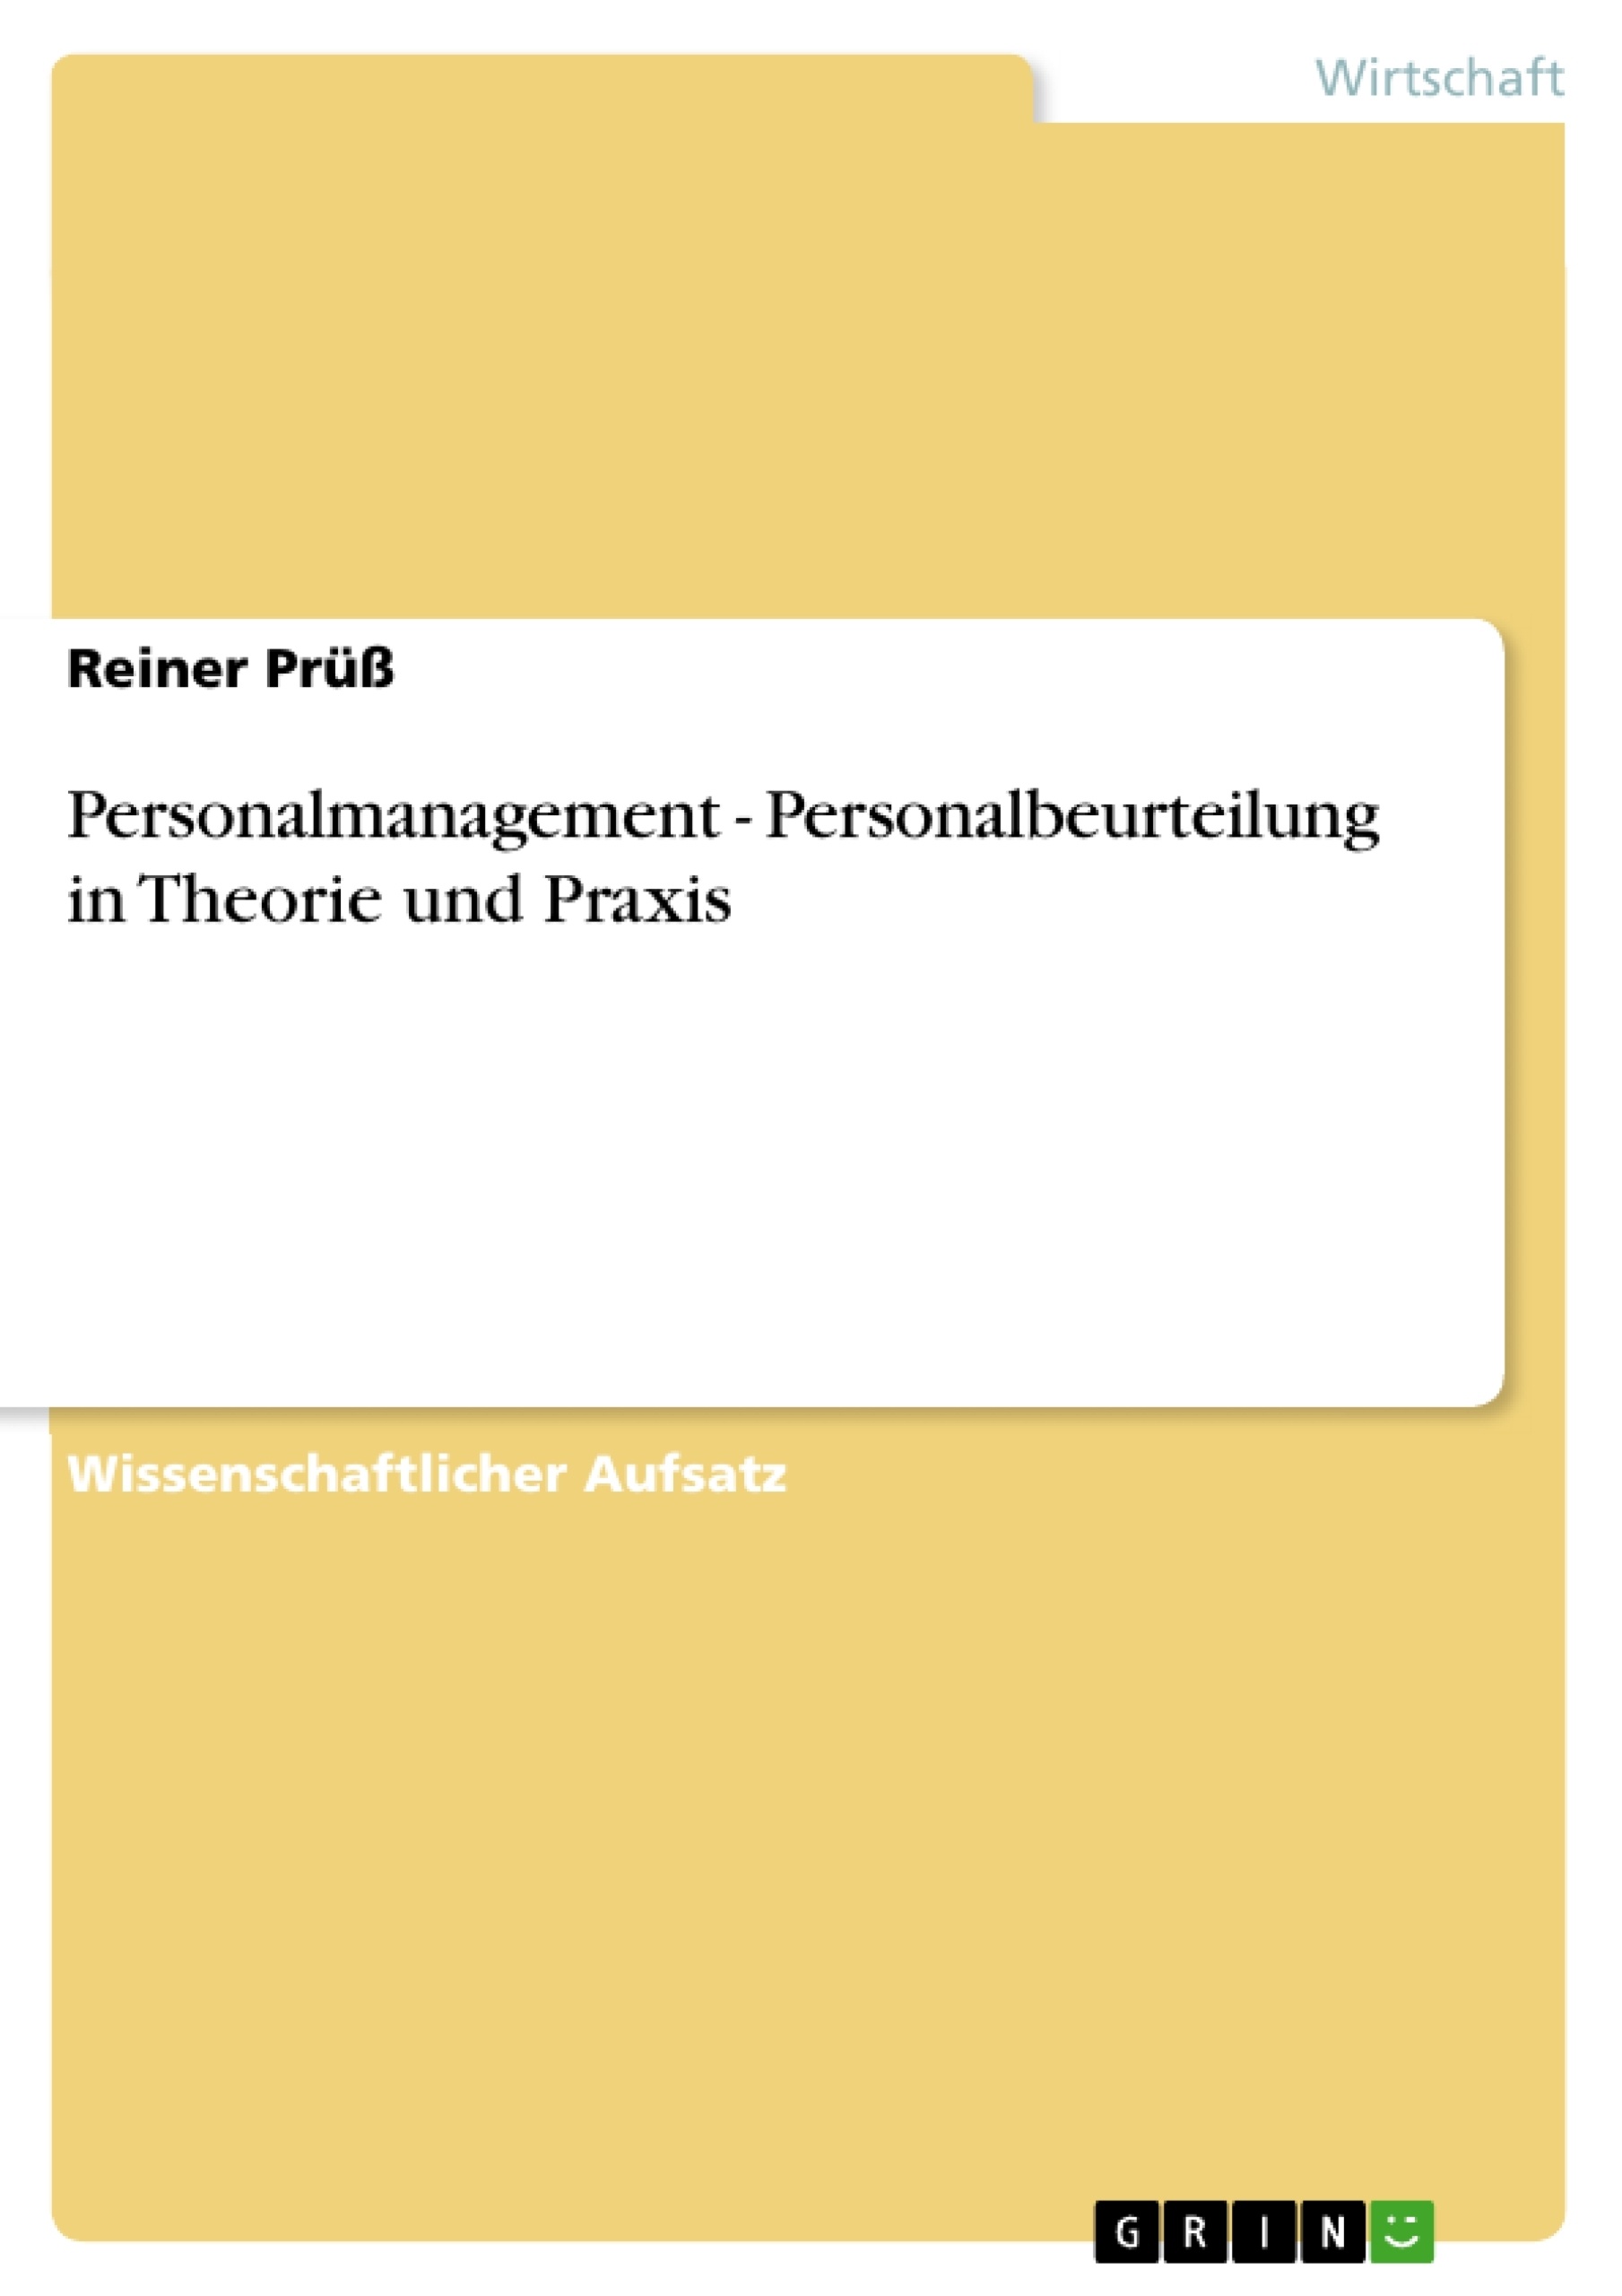 Title: Personalmanagement - Personalbeurteilung in Theorie und Praxis